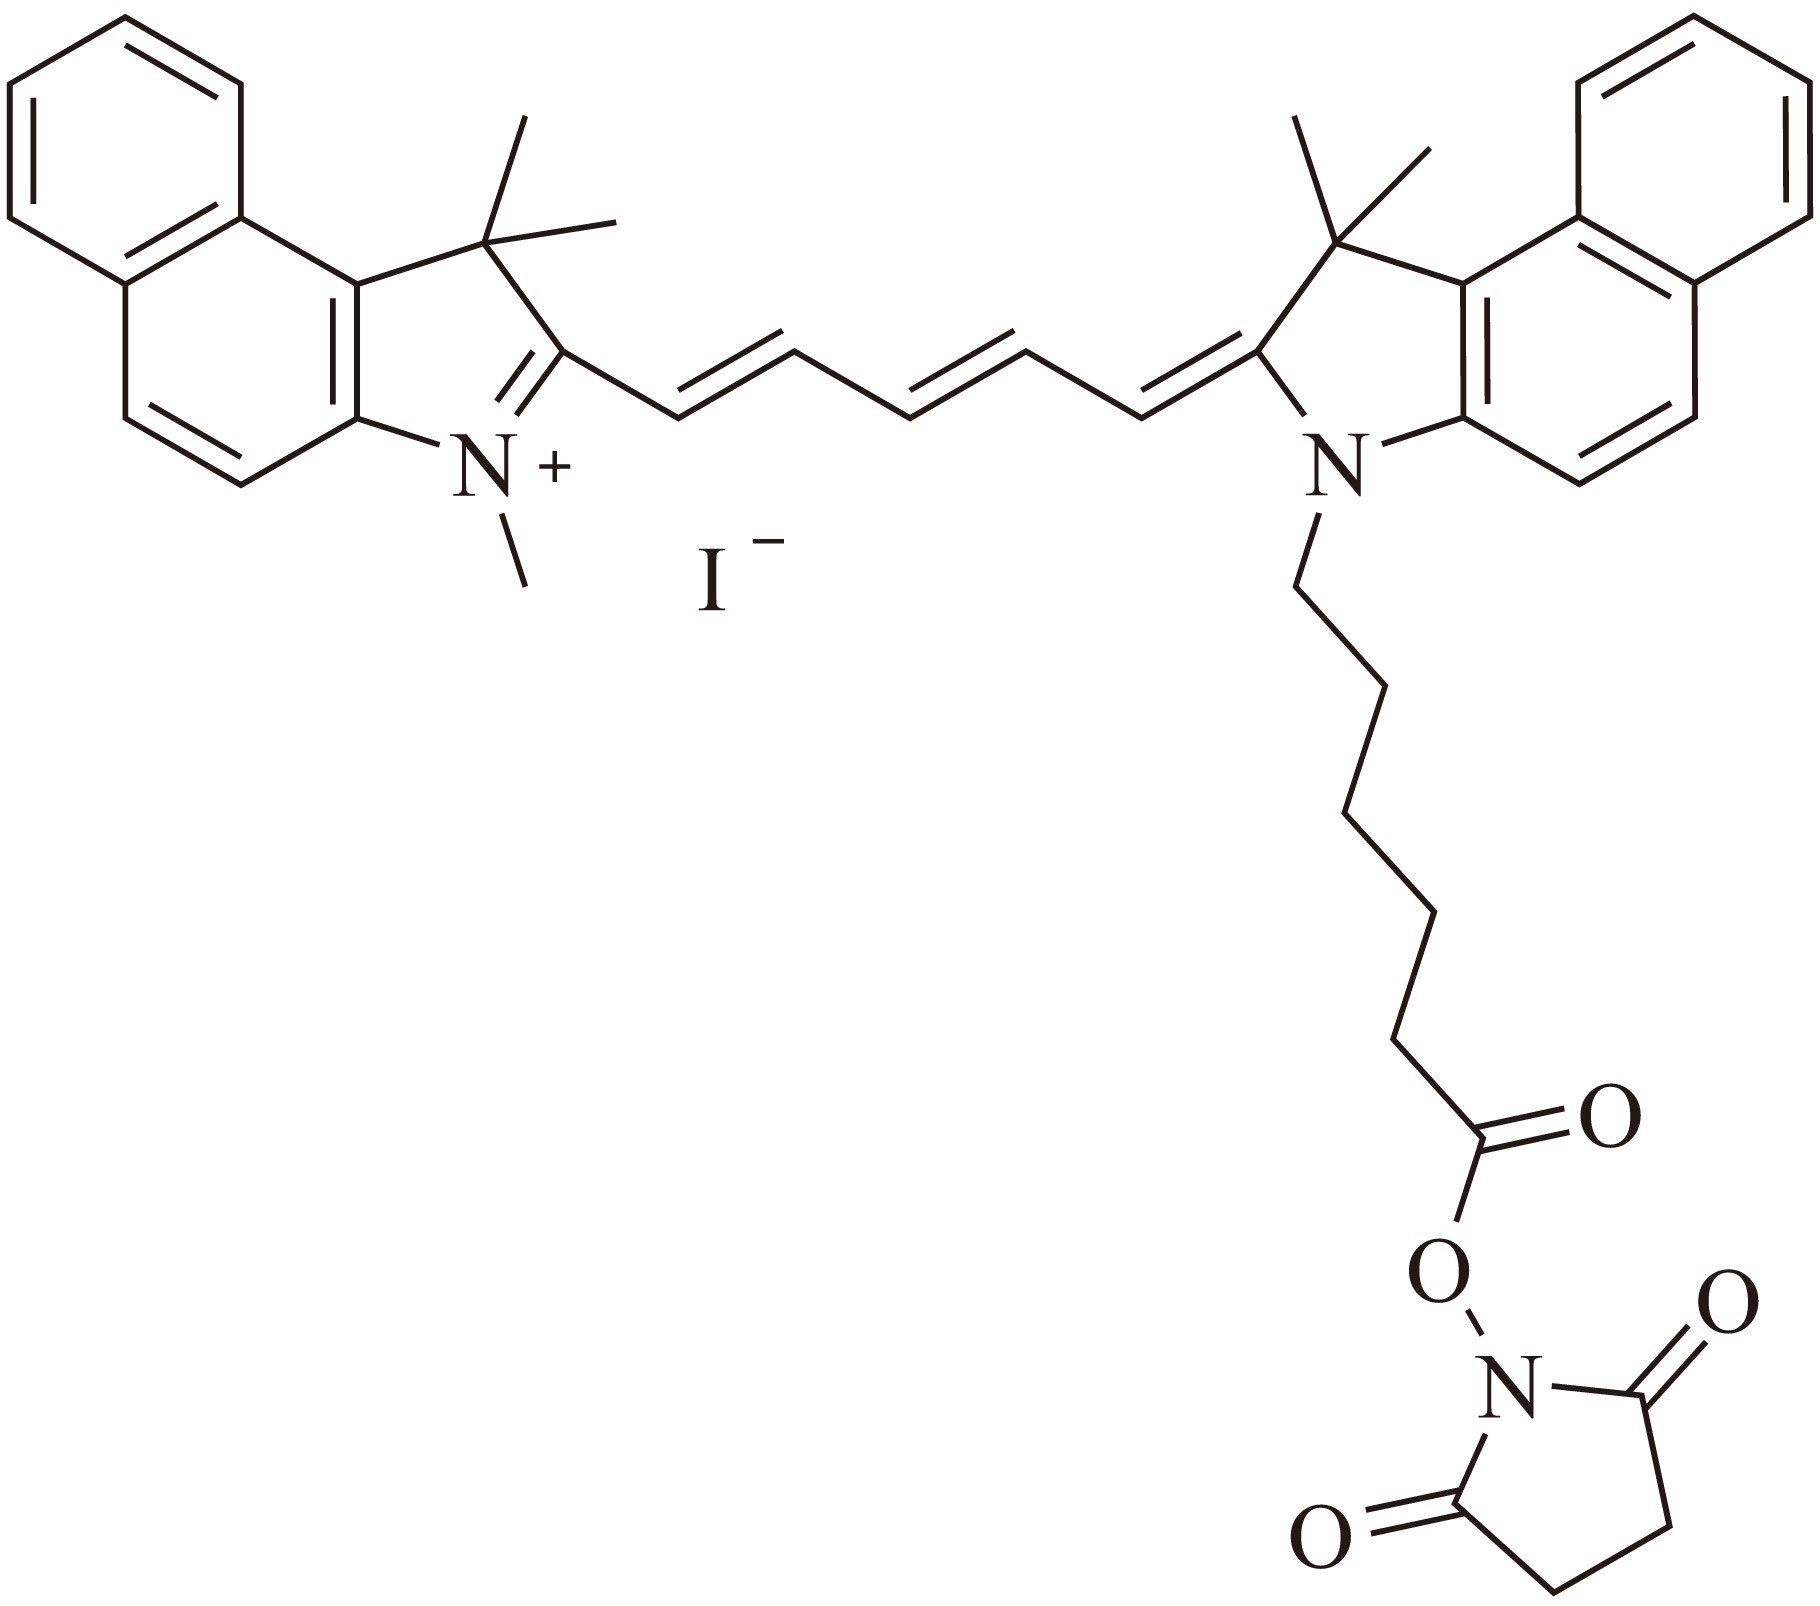 Sulfo-Cy3-E SE（Sulfo-Cy3-E 琥珀酰亚胺酯） 货号:               C5060  规格:               1 mg